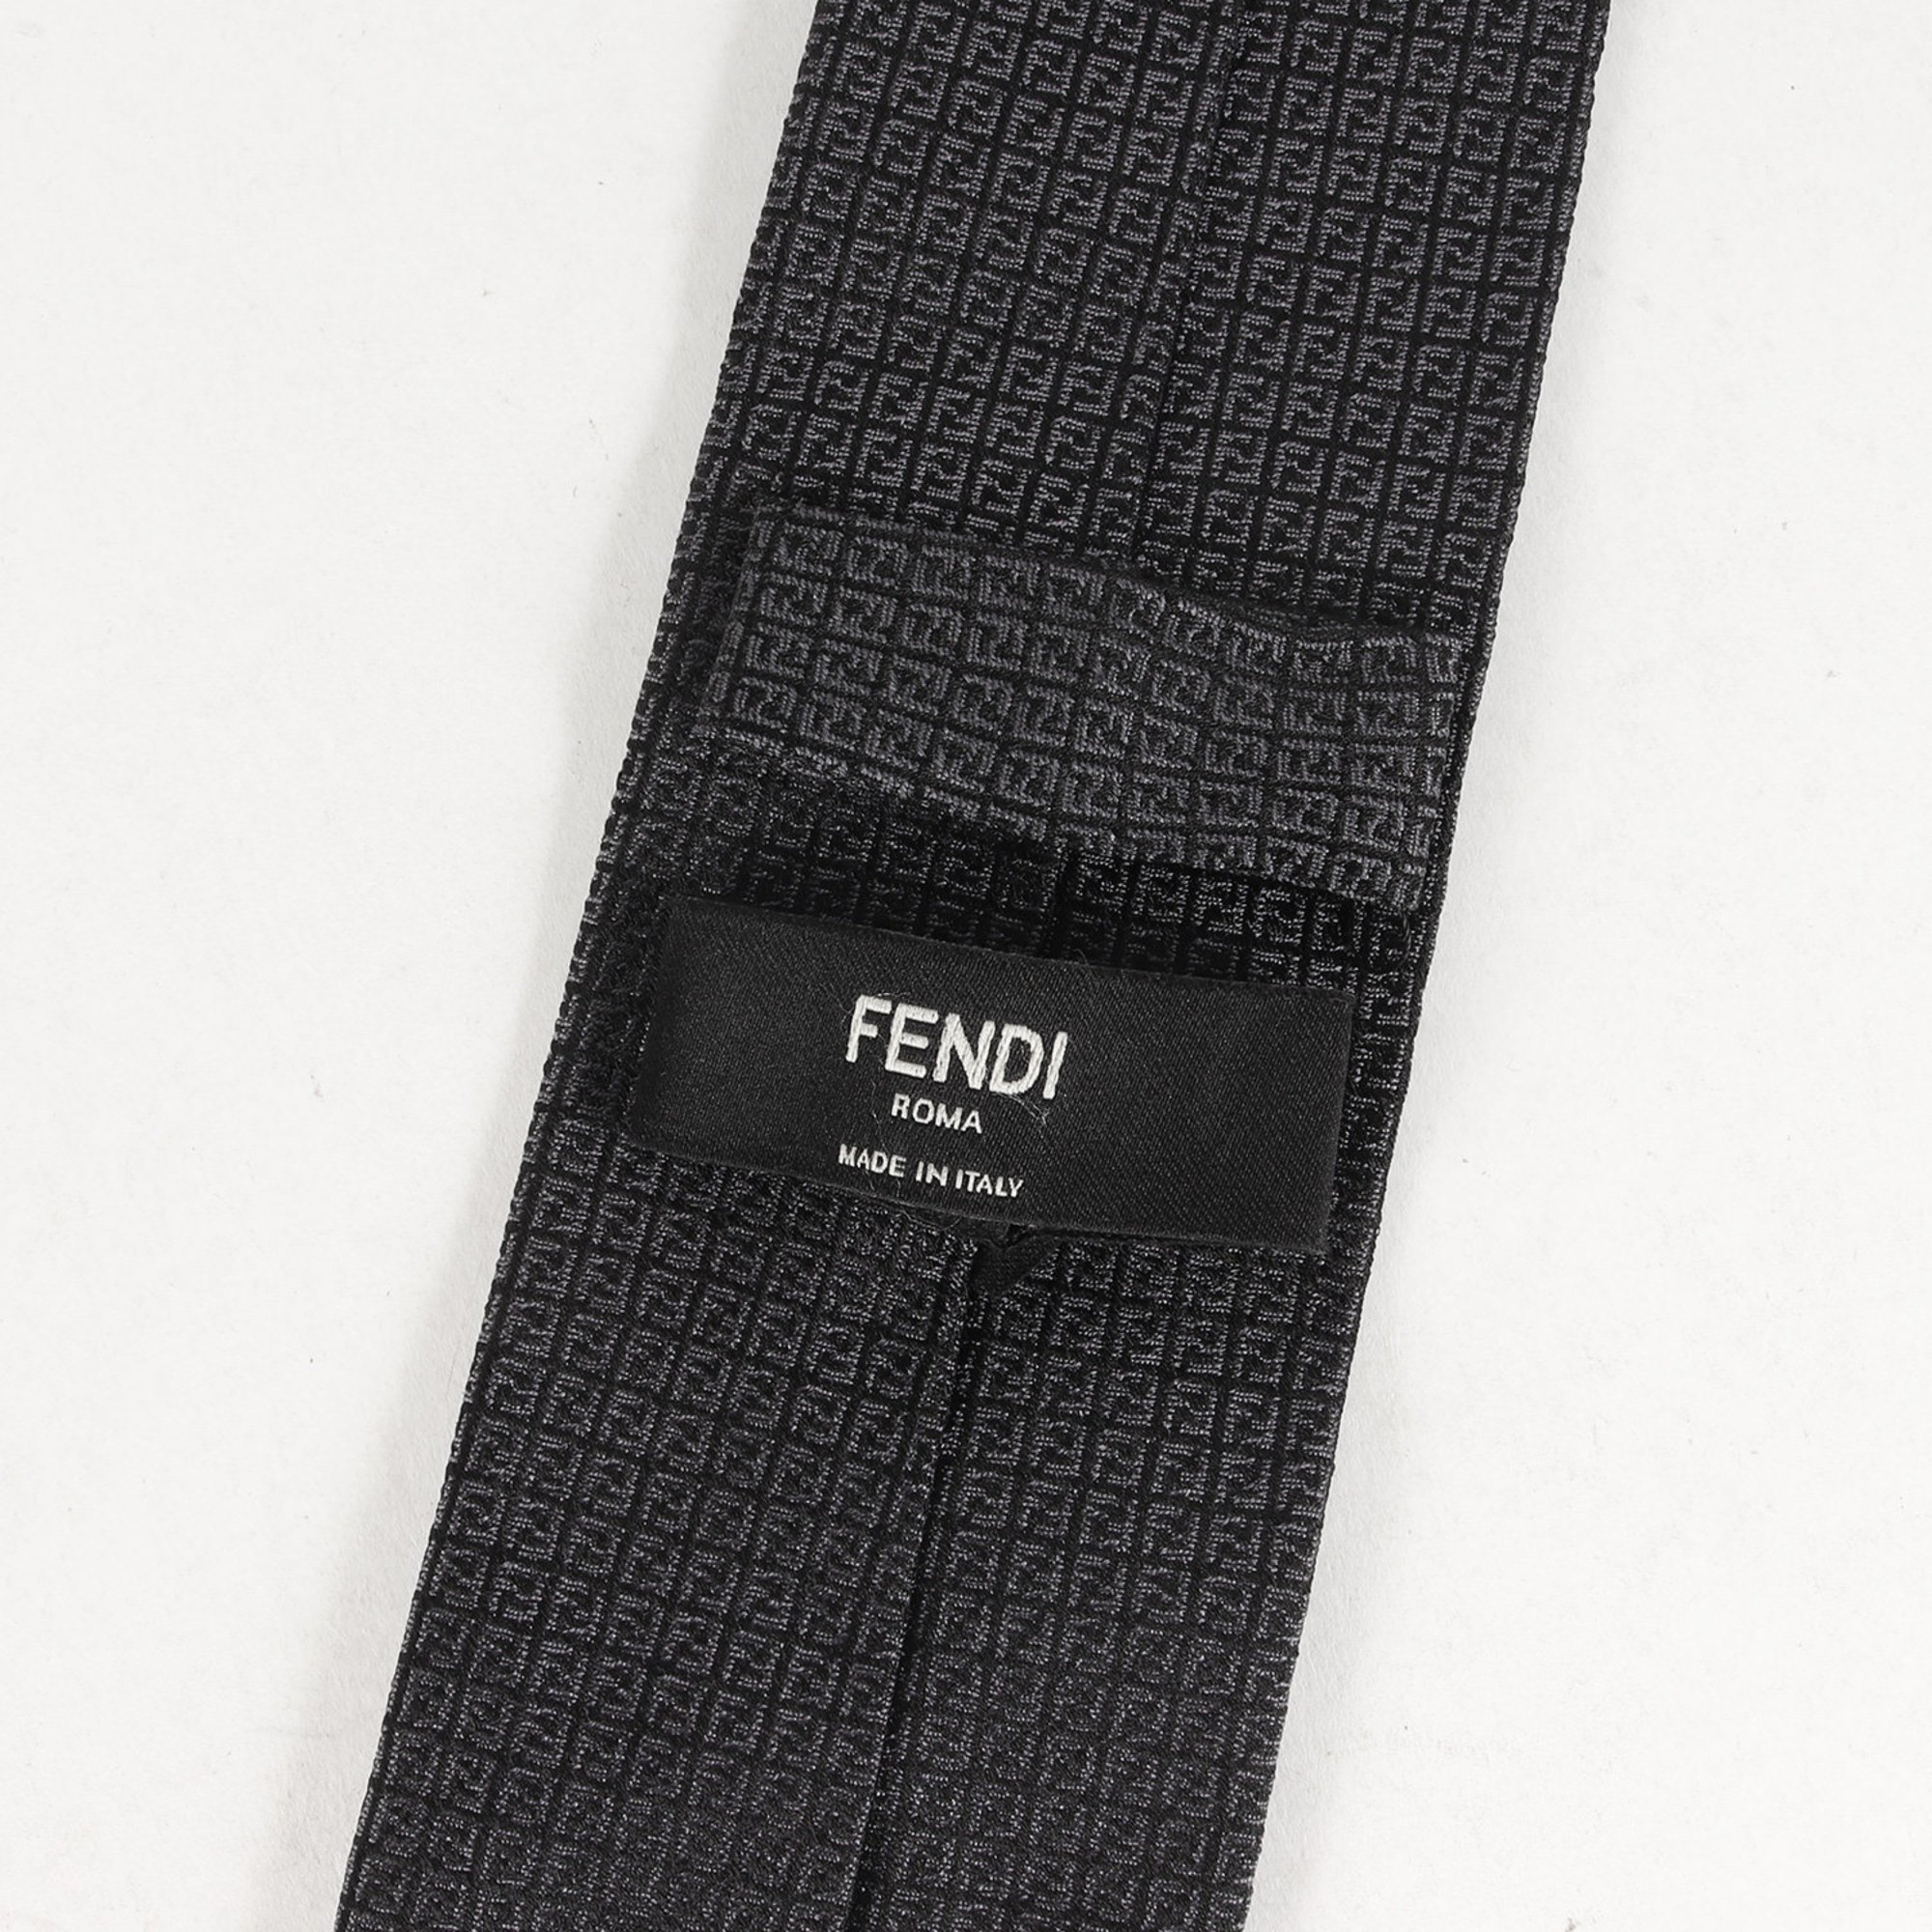 FENDI Zucca pattern silk tie charcoal gray black luxury men's